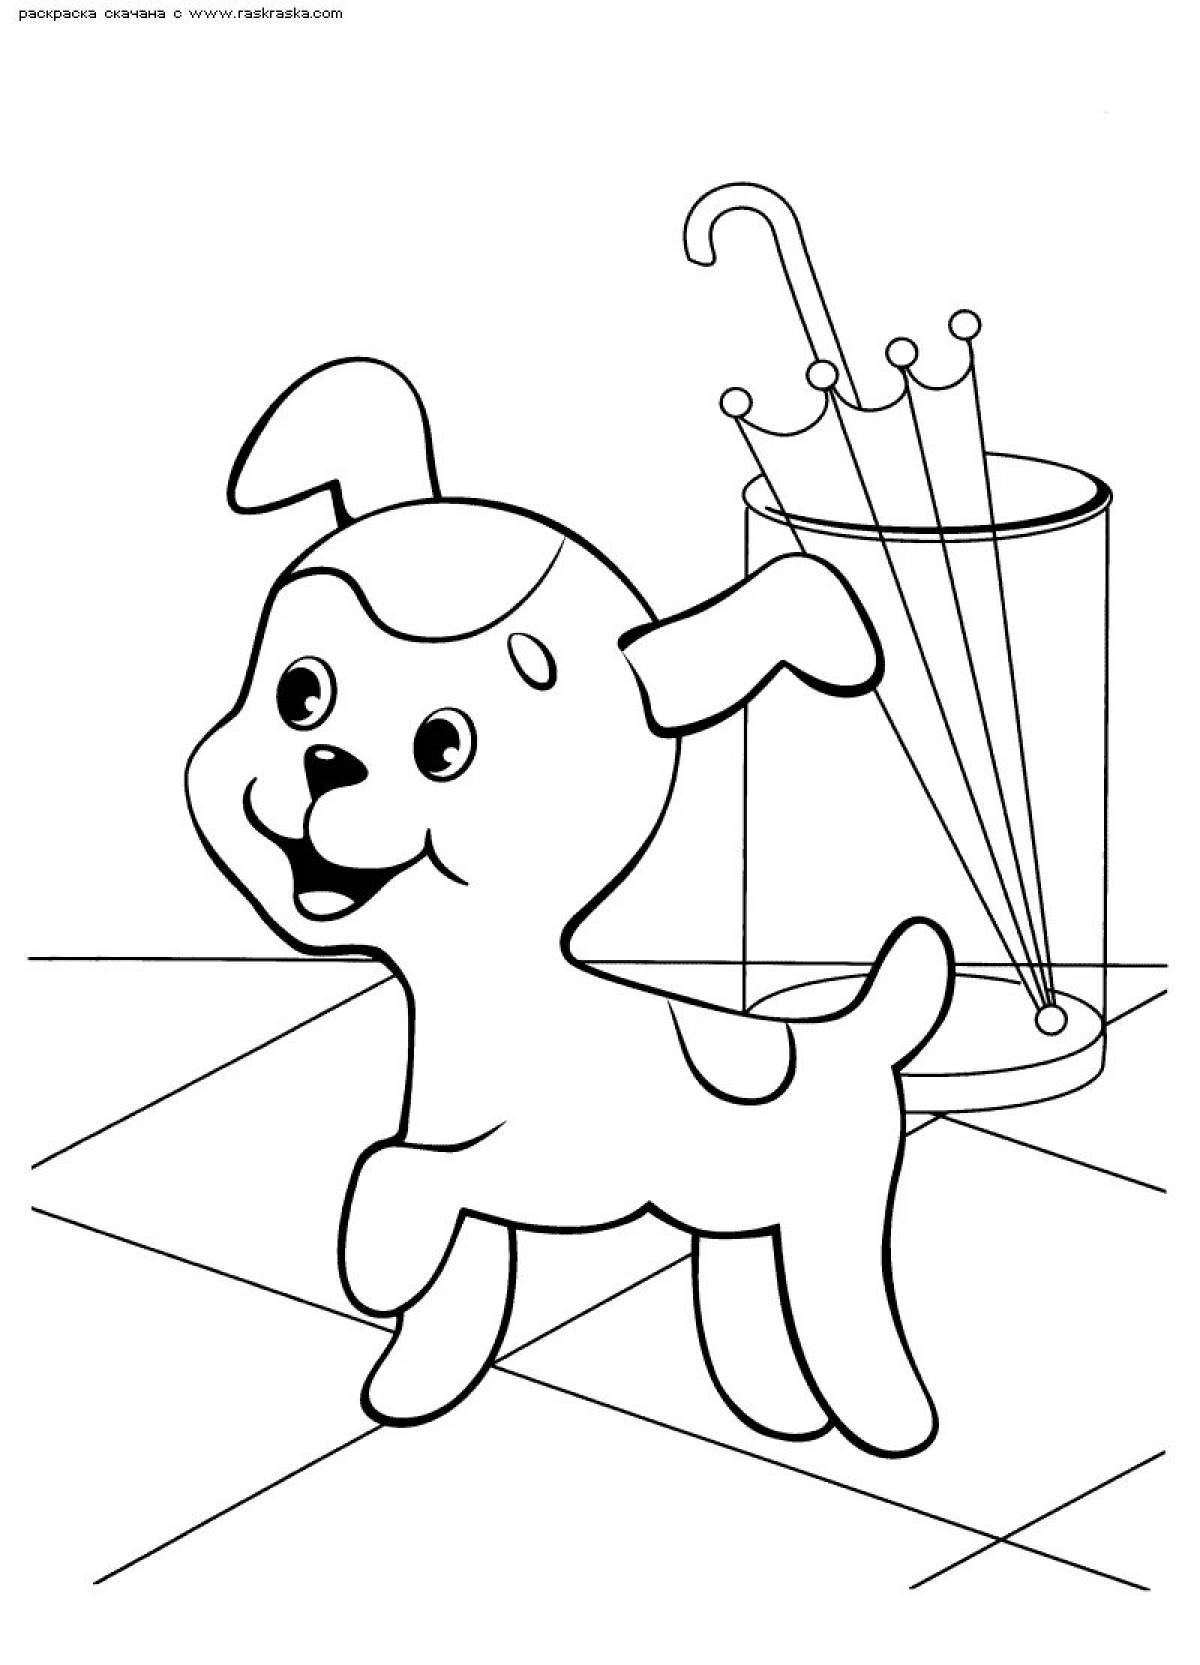 Содержимое страницы раскраски щенка